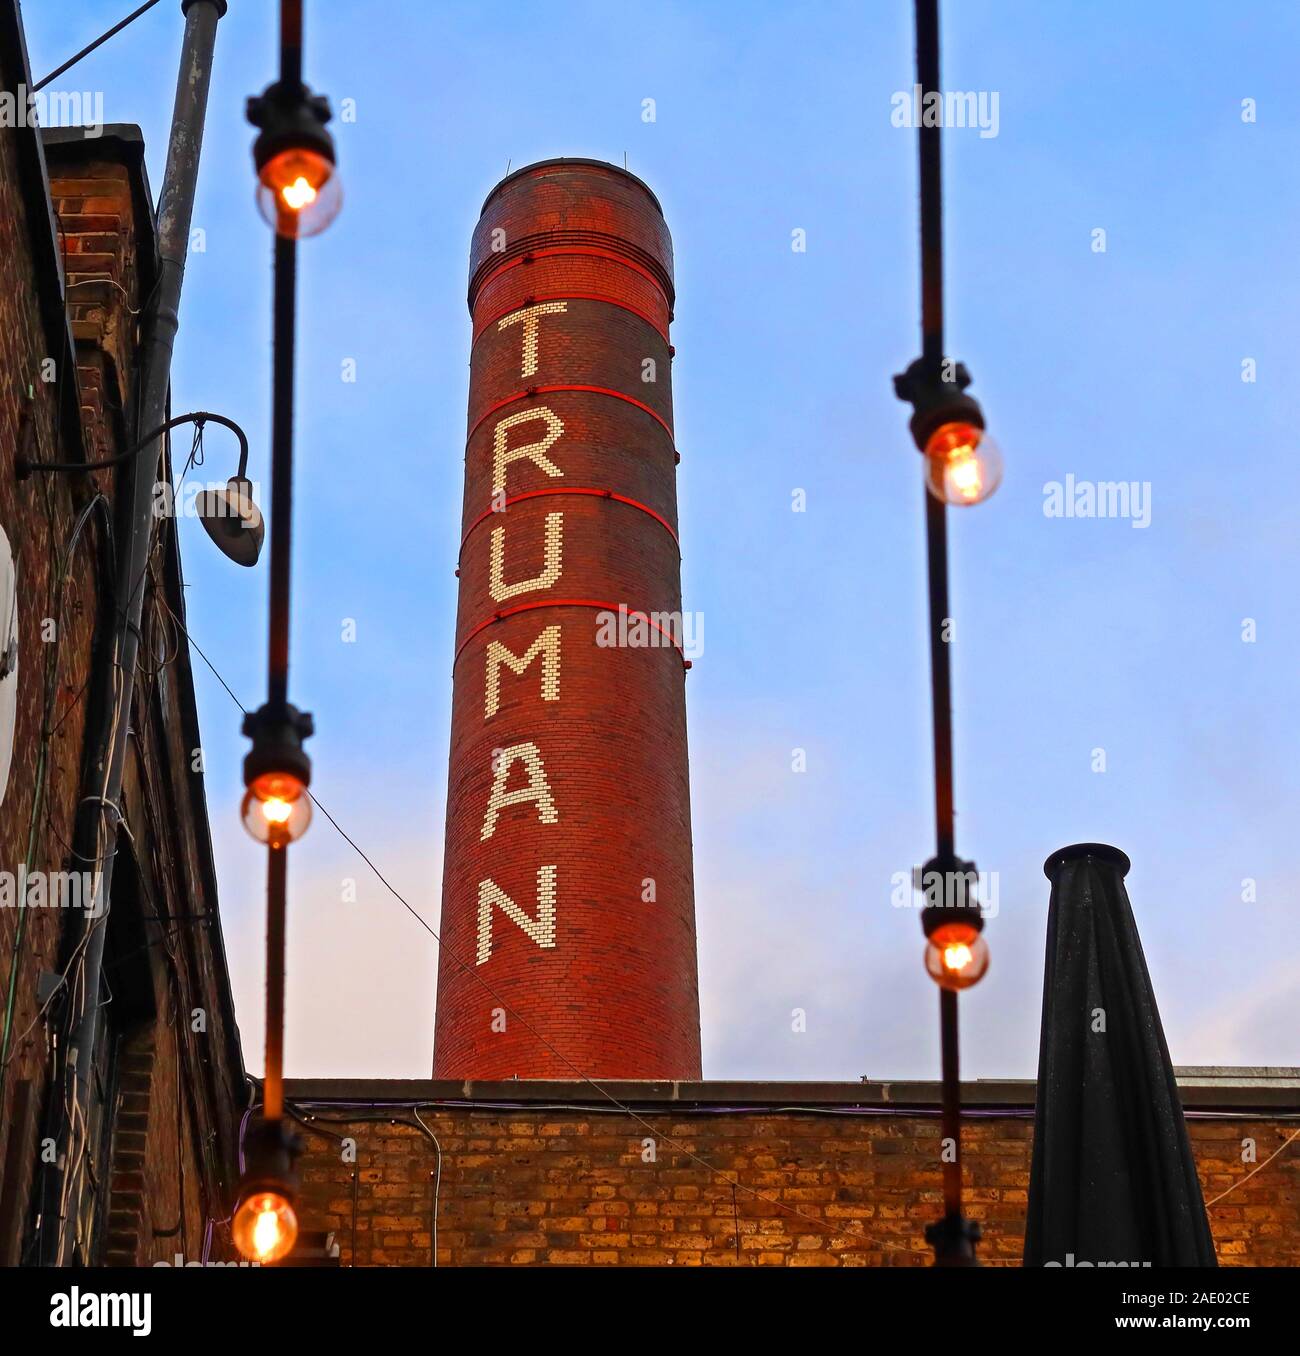 Portes de la brasserie Truman et cheminée de brasserie, ancienne maison de brewhouse, Brick Lane, East End, Londres, Angleterre, Royaume-Uni, E1 6QR Banque D'Images